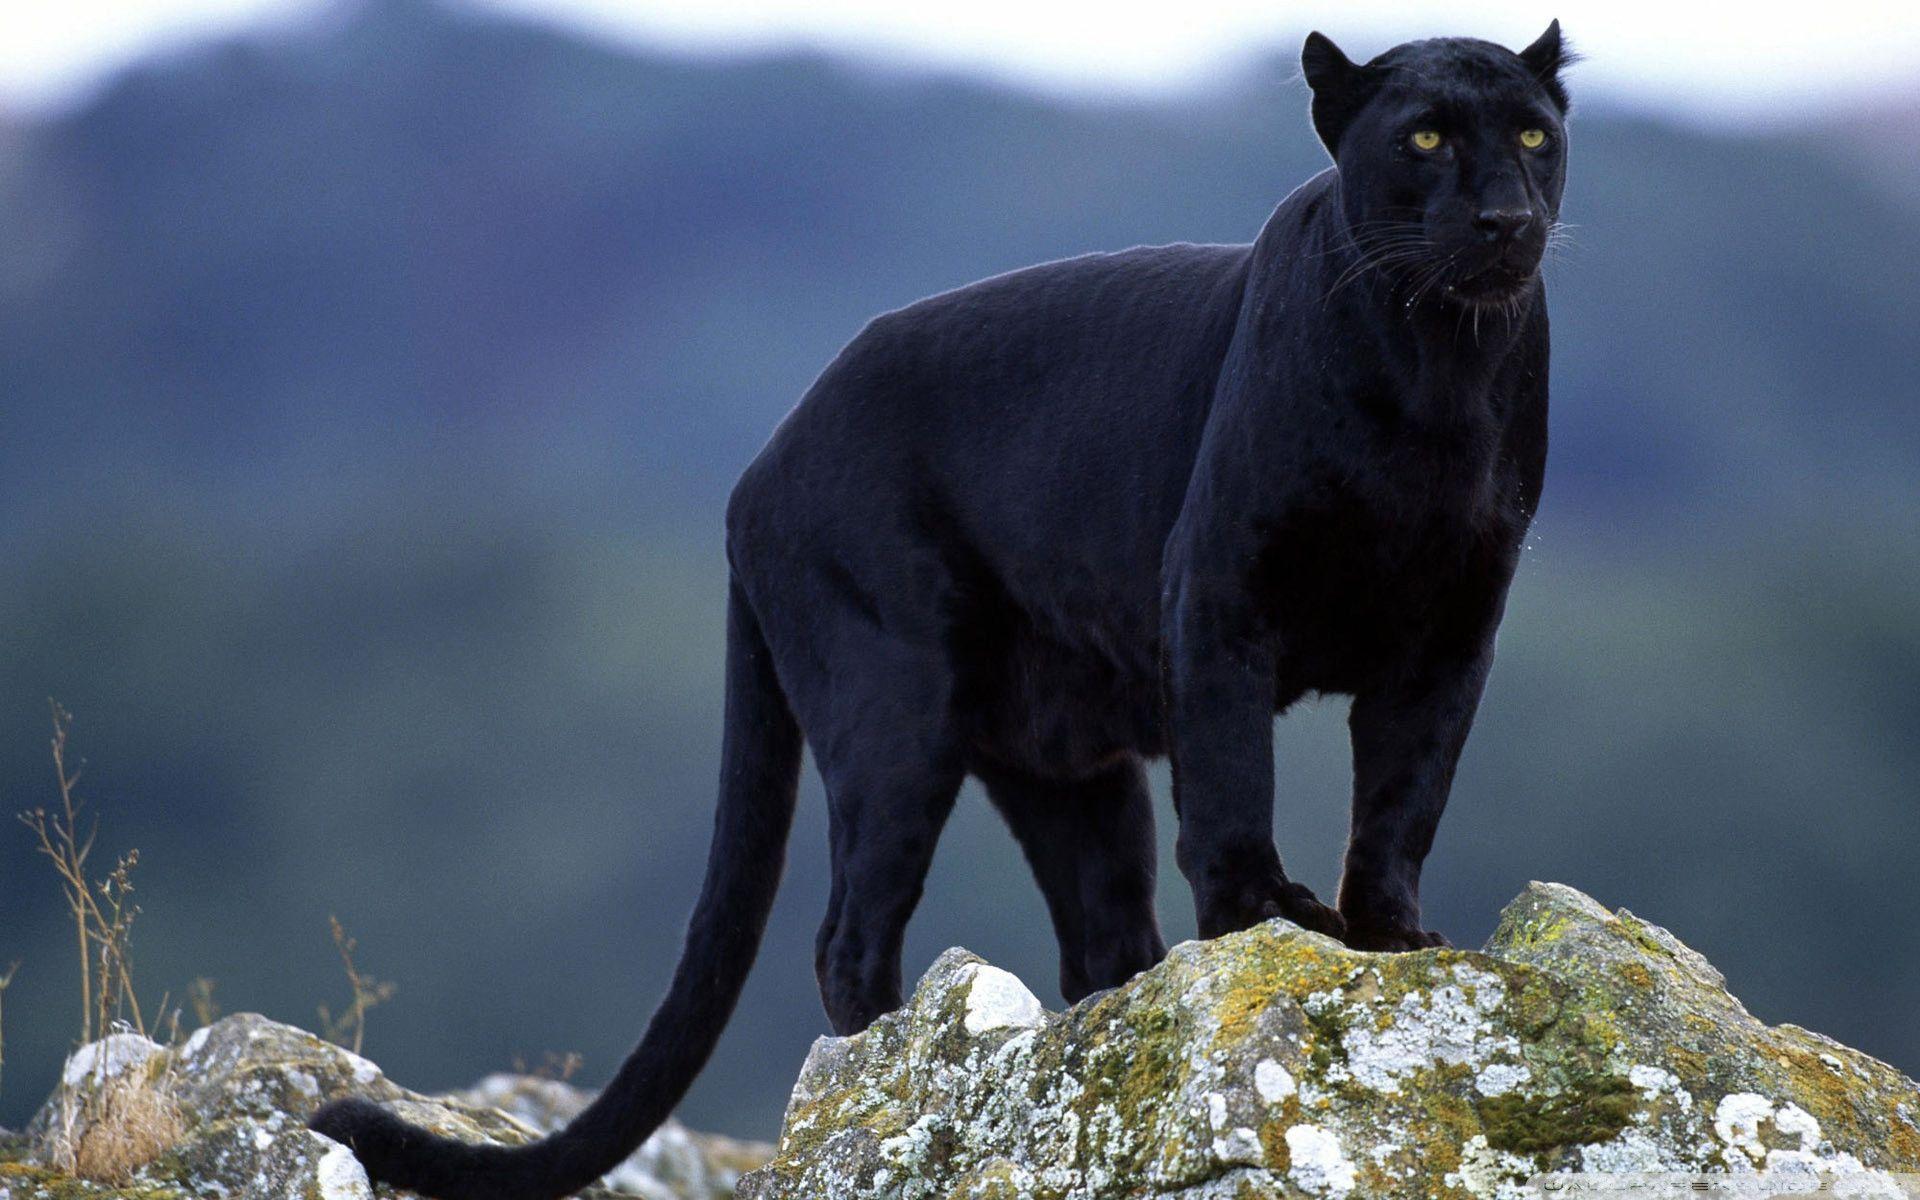 Black Panther HD Wallpaper. Black Panther Image